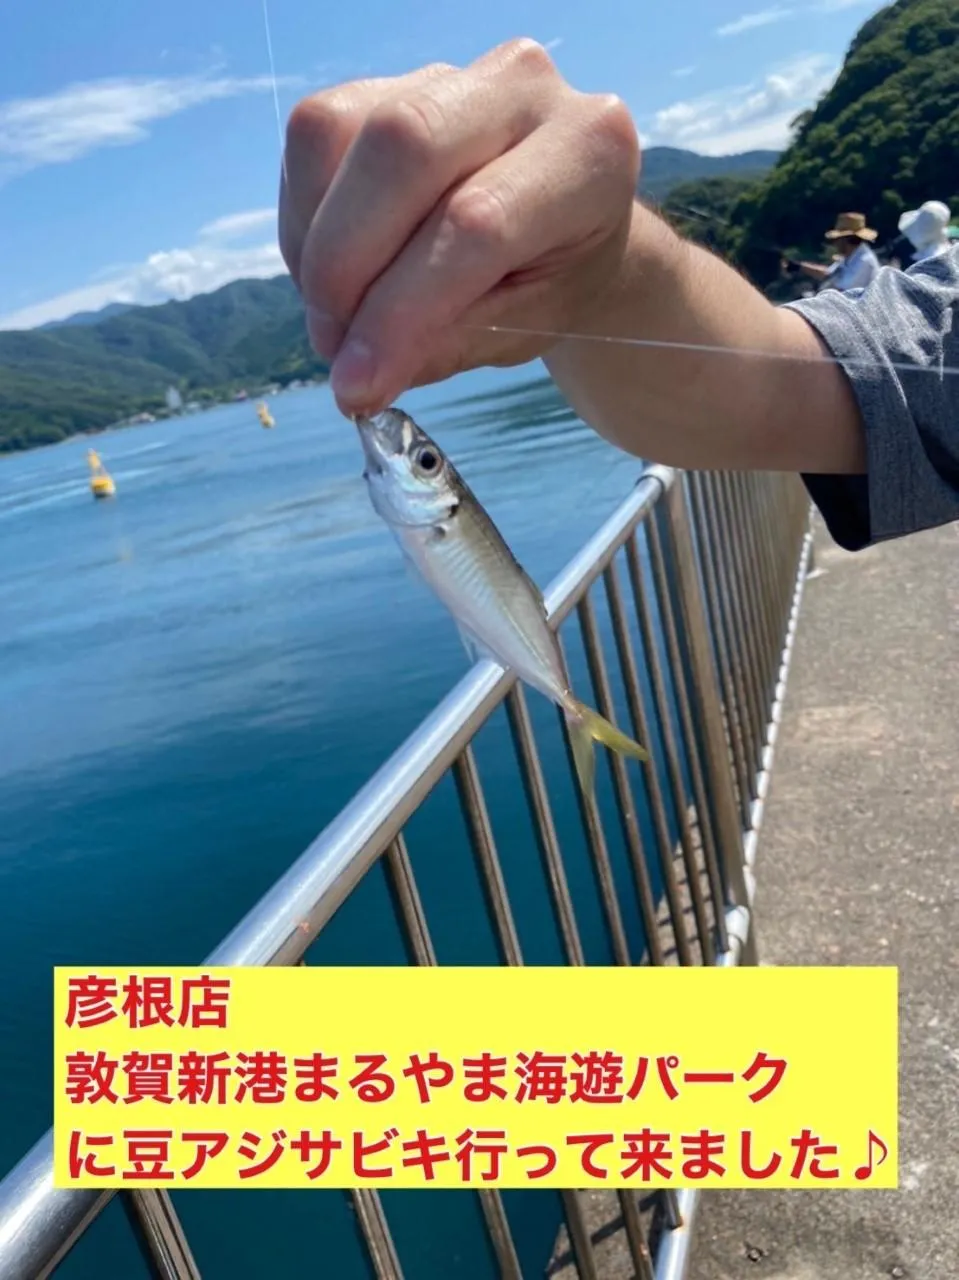 彦根店 まるやま海遊パークへサビキ釣りに行ってきました 釣具のイシグロ 釣り情報サイト